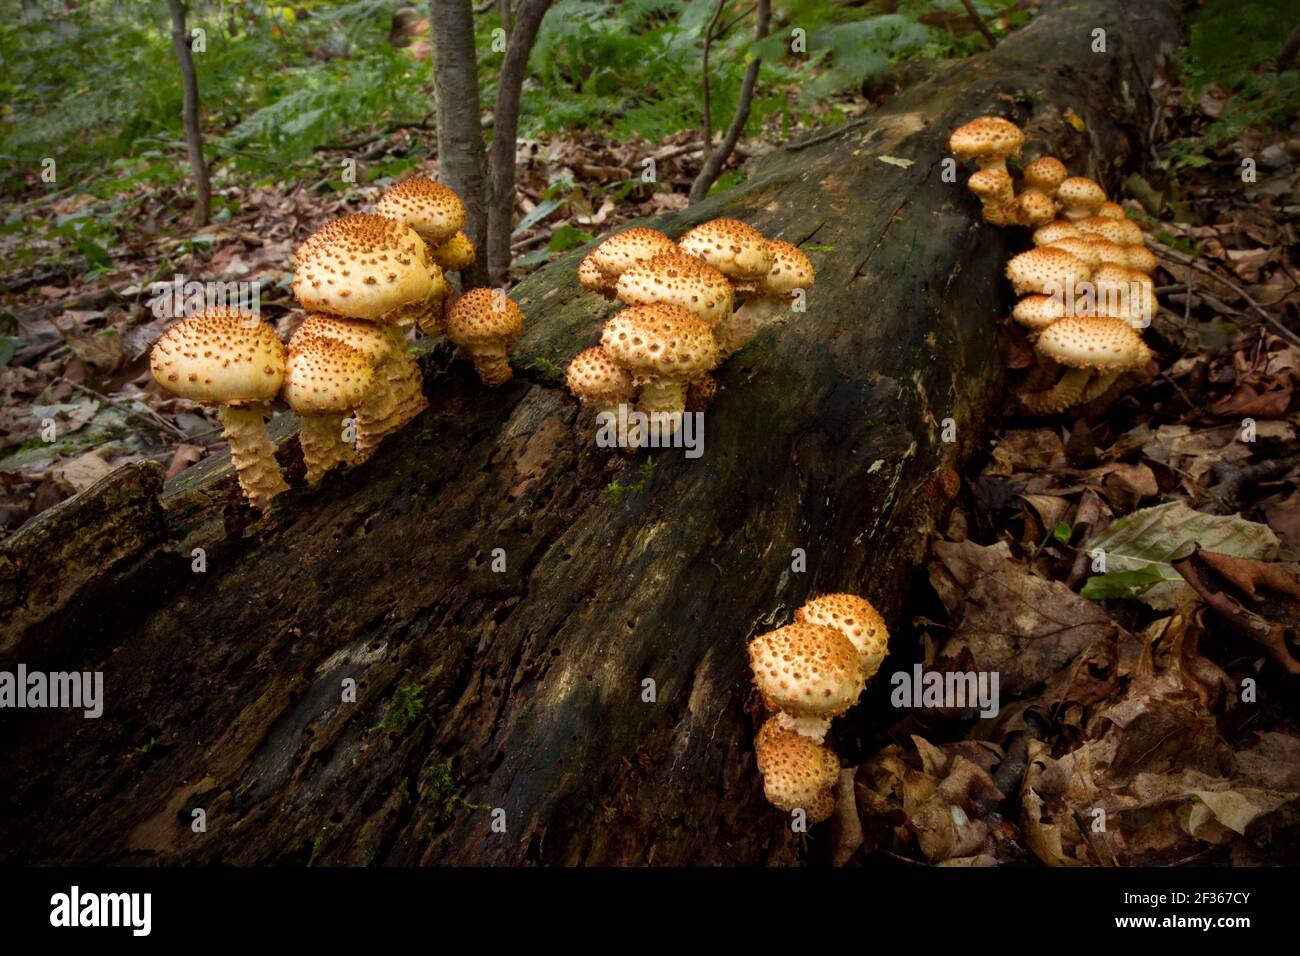 Pholiota Scaly un fungo saprotrofico comune che si nutre di legno indebolito o morto. Si è riferito che è velenoso per il consumo umano. Foto Stock